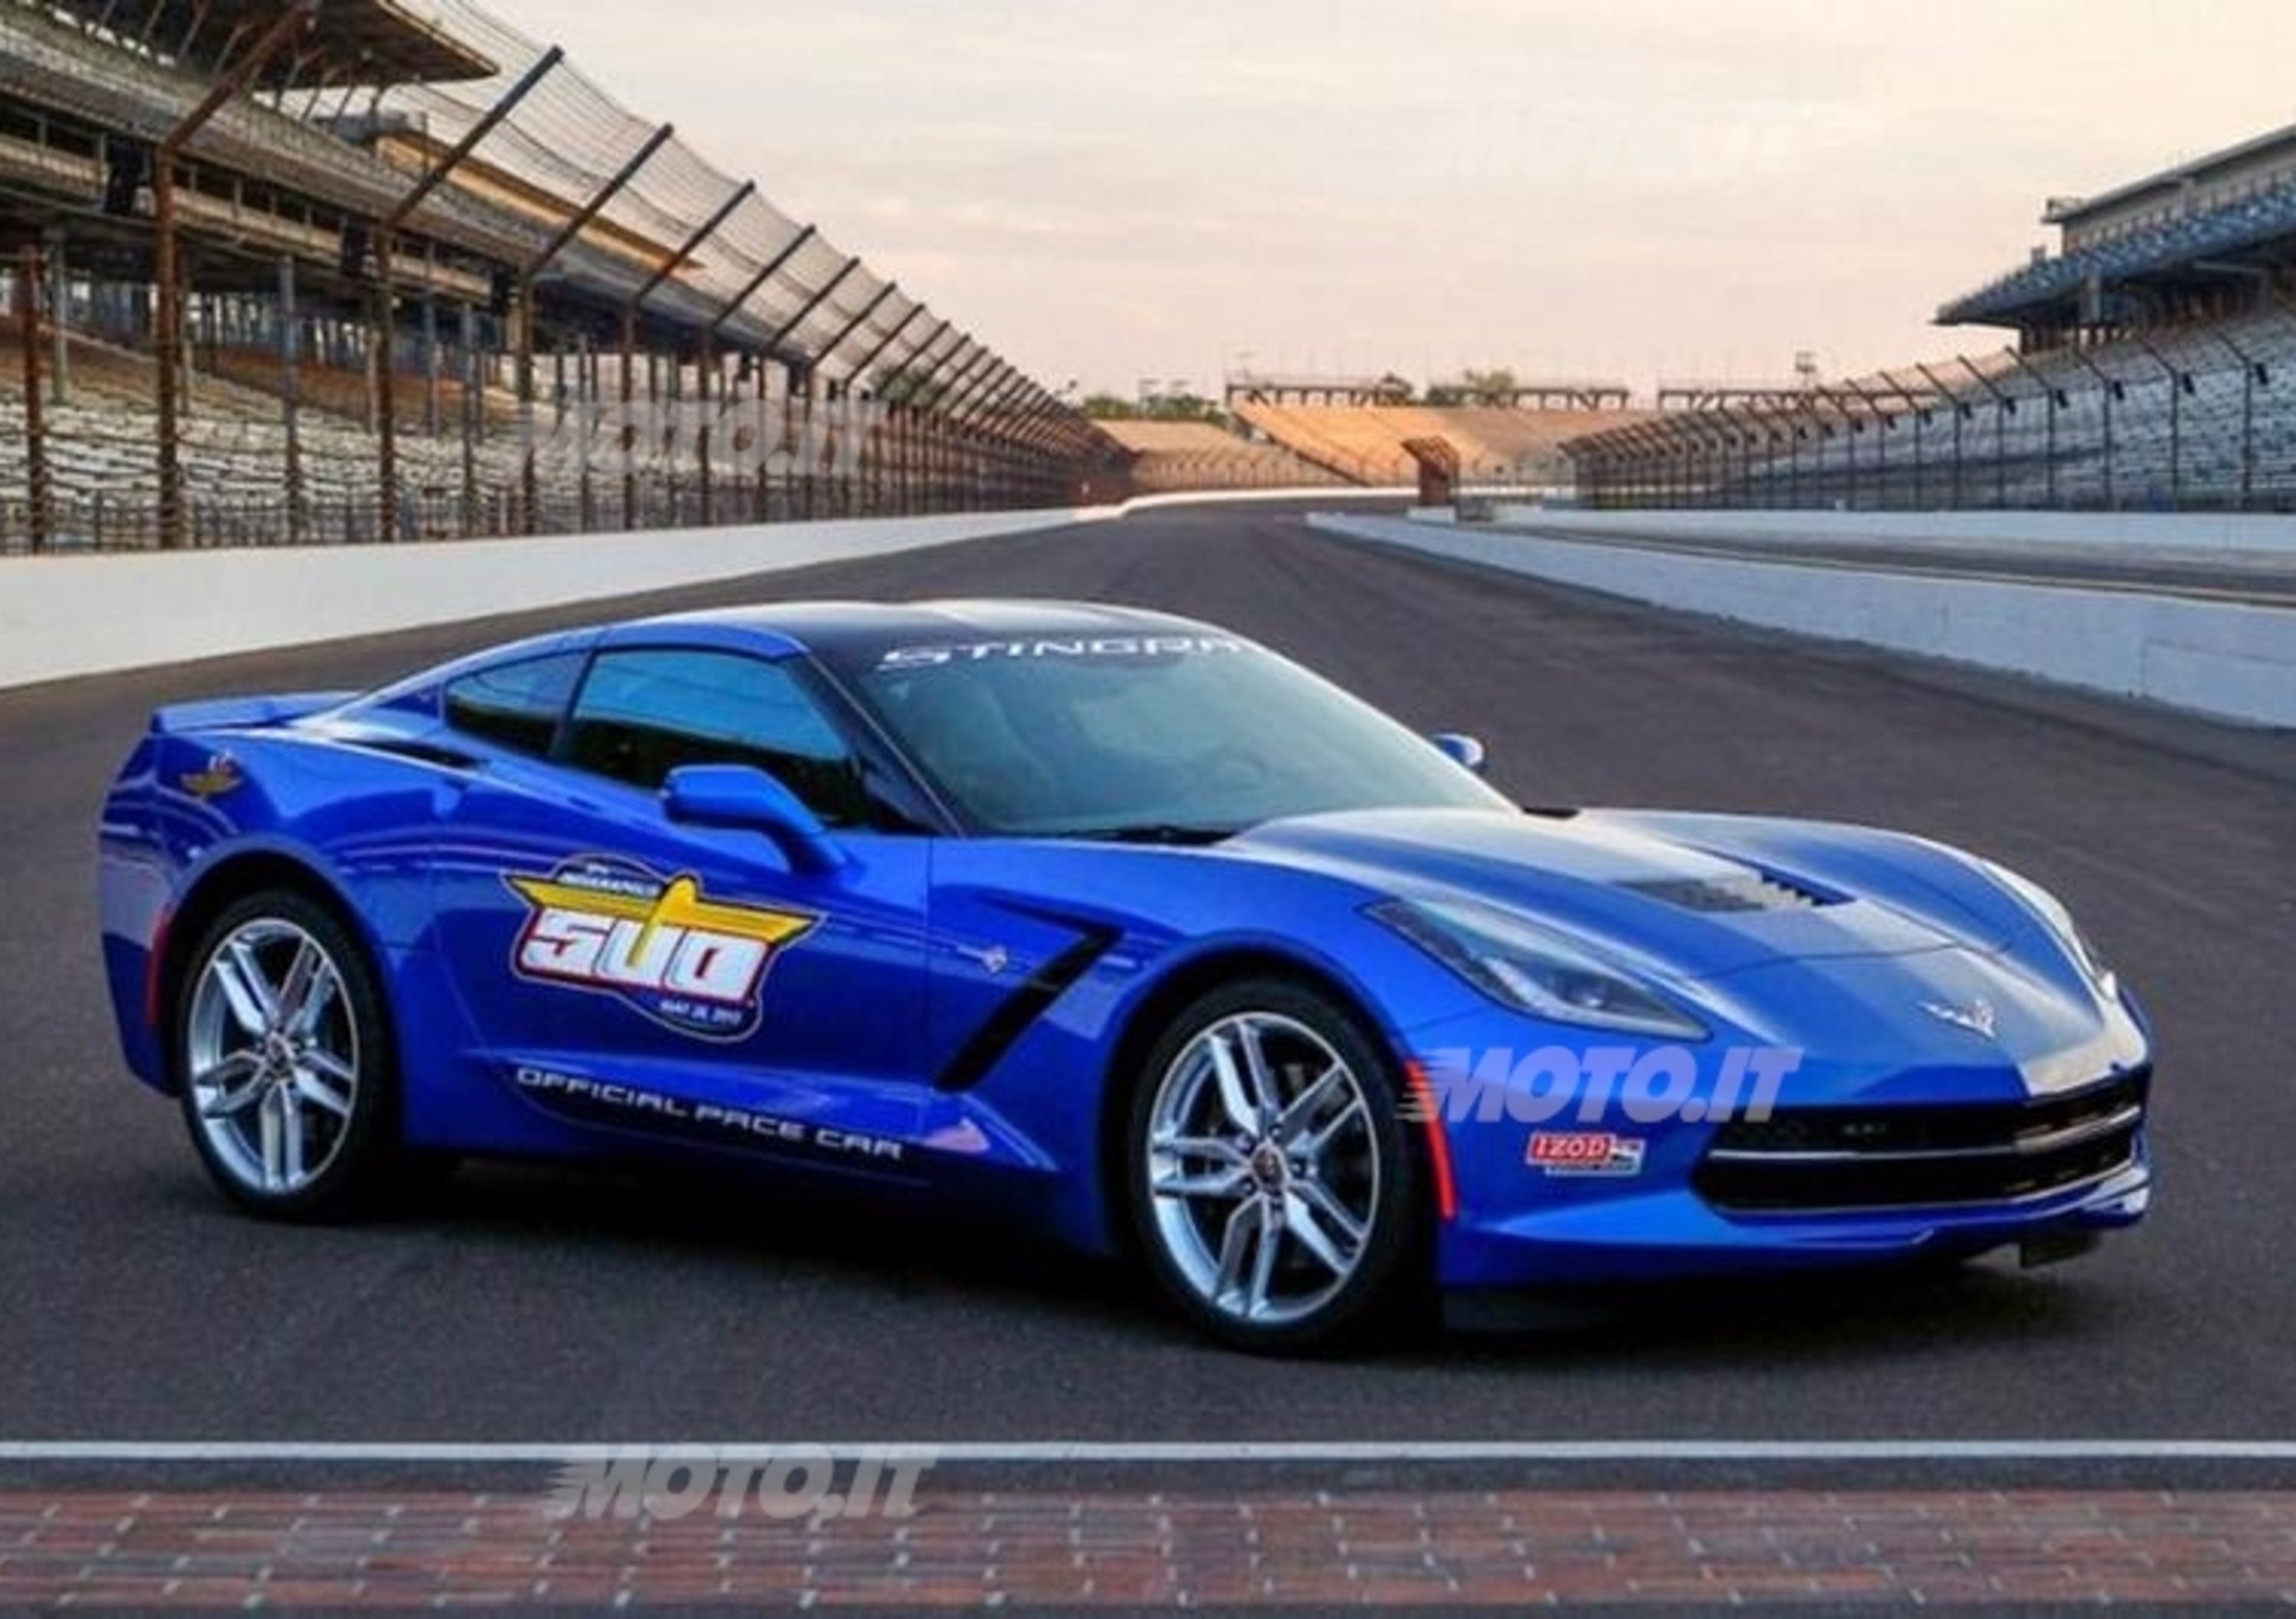 Corvette C7 Stingray Indy 500 Pace Car